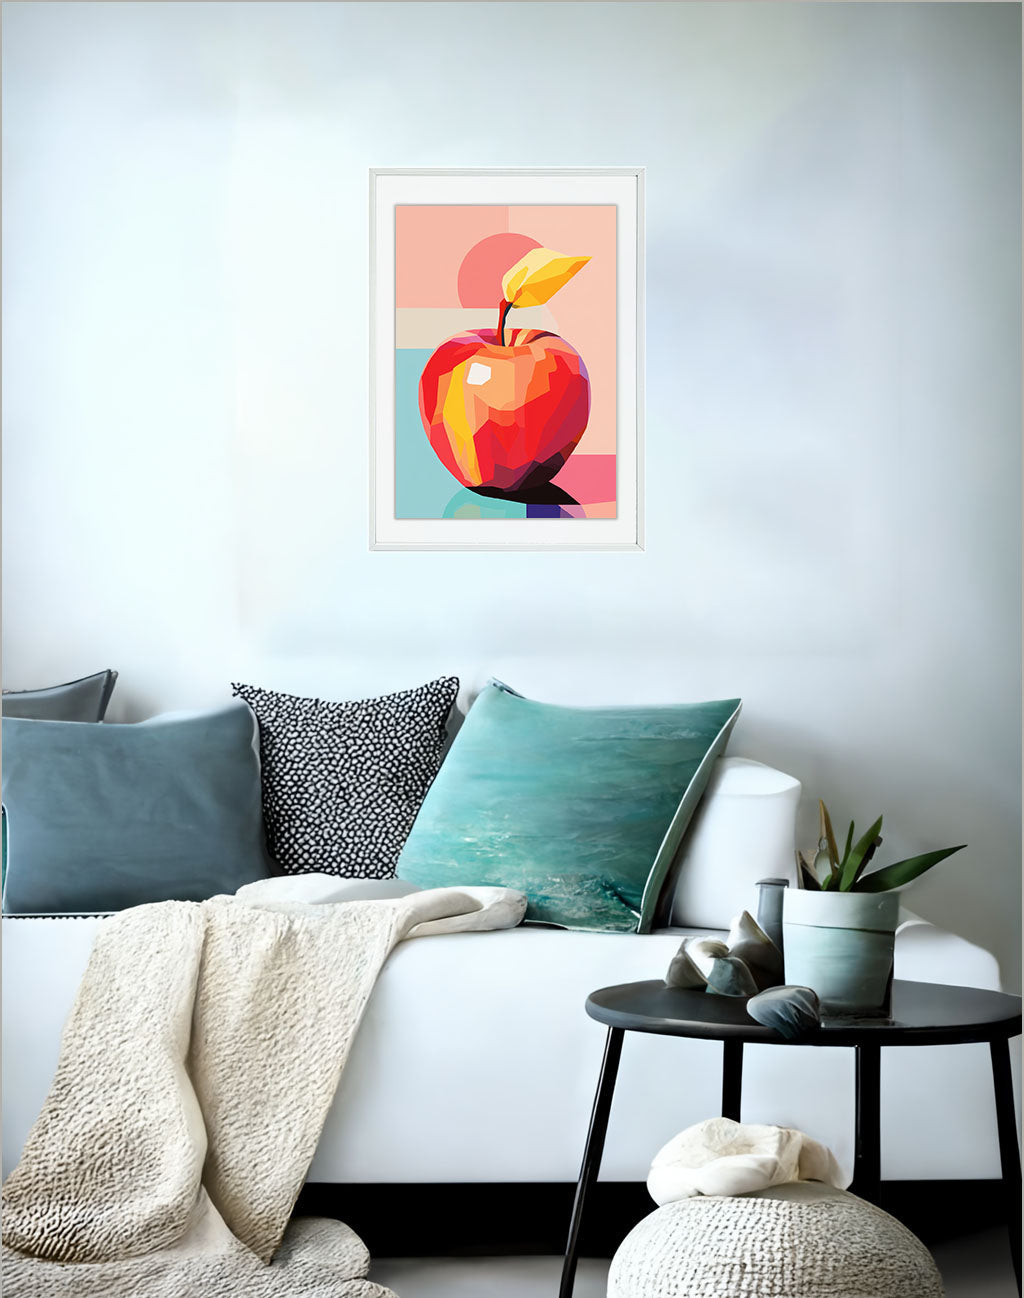 りんごのアートポスター:apple_5d10 / キッチン_フルーツと野菜_のポスター画像ソファ近くに設置したイメージ